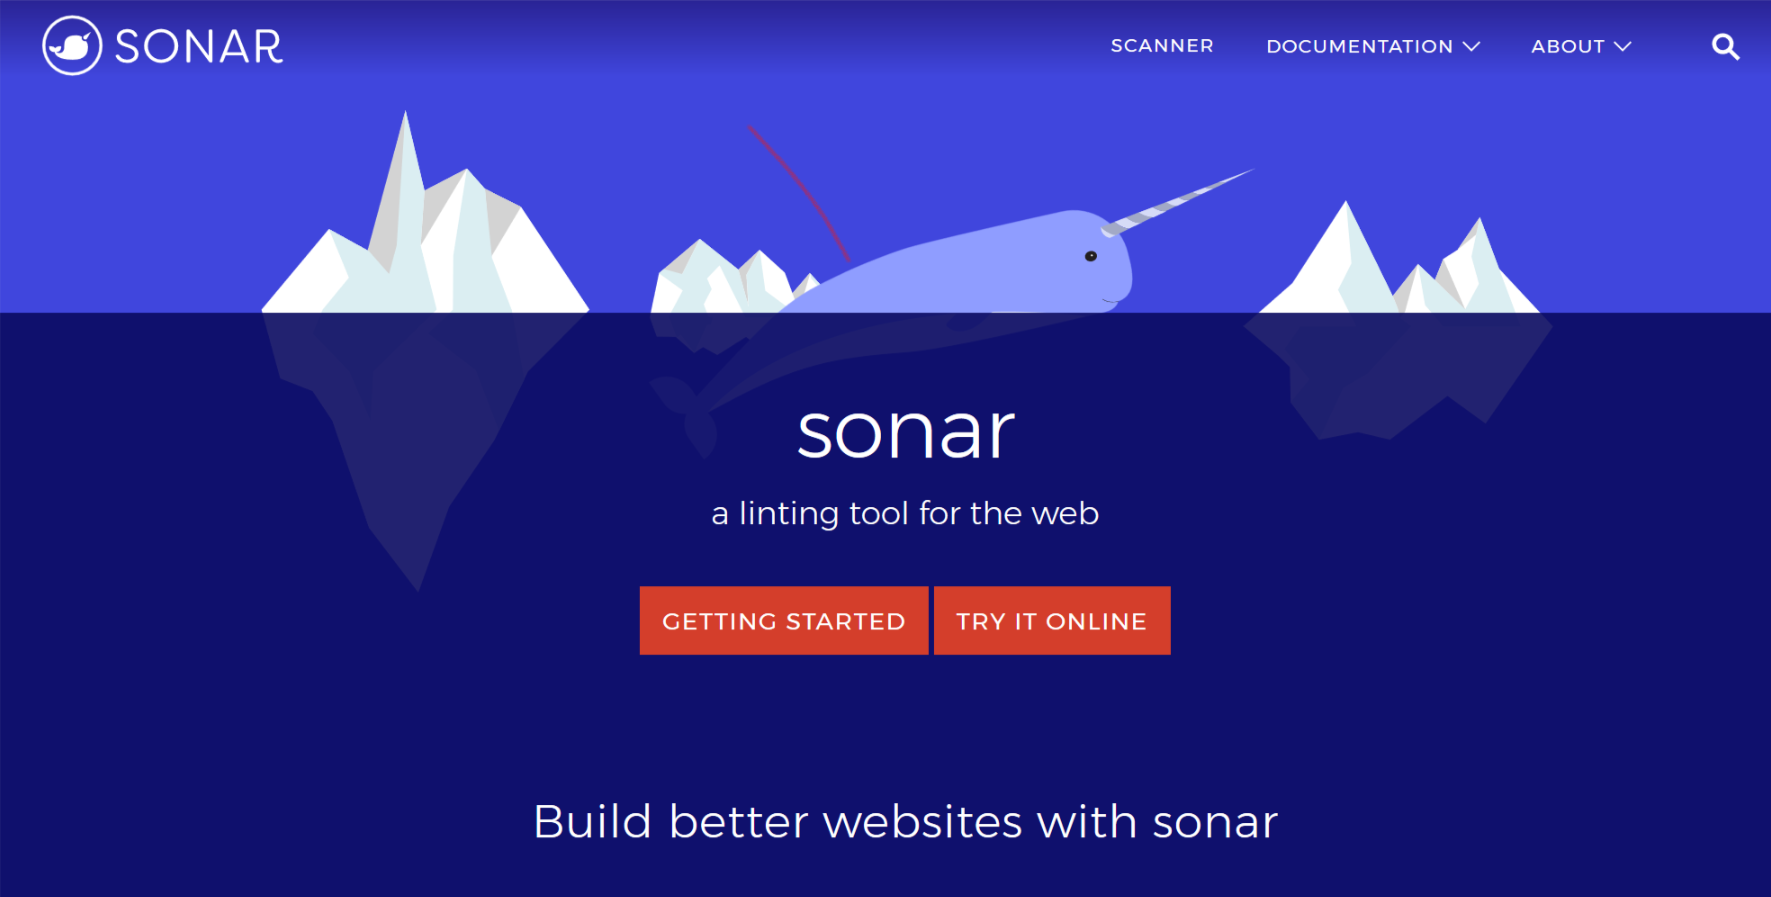 Microsoft ra mắt tính năng Sonar cho phép kiểm tra hiệu năng và bảo mật của các website một cách dễ dàng